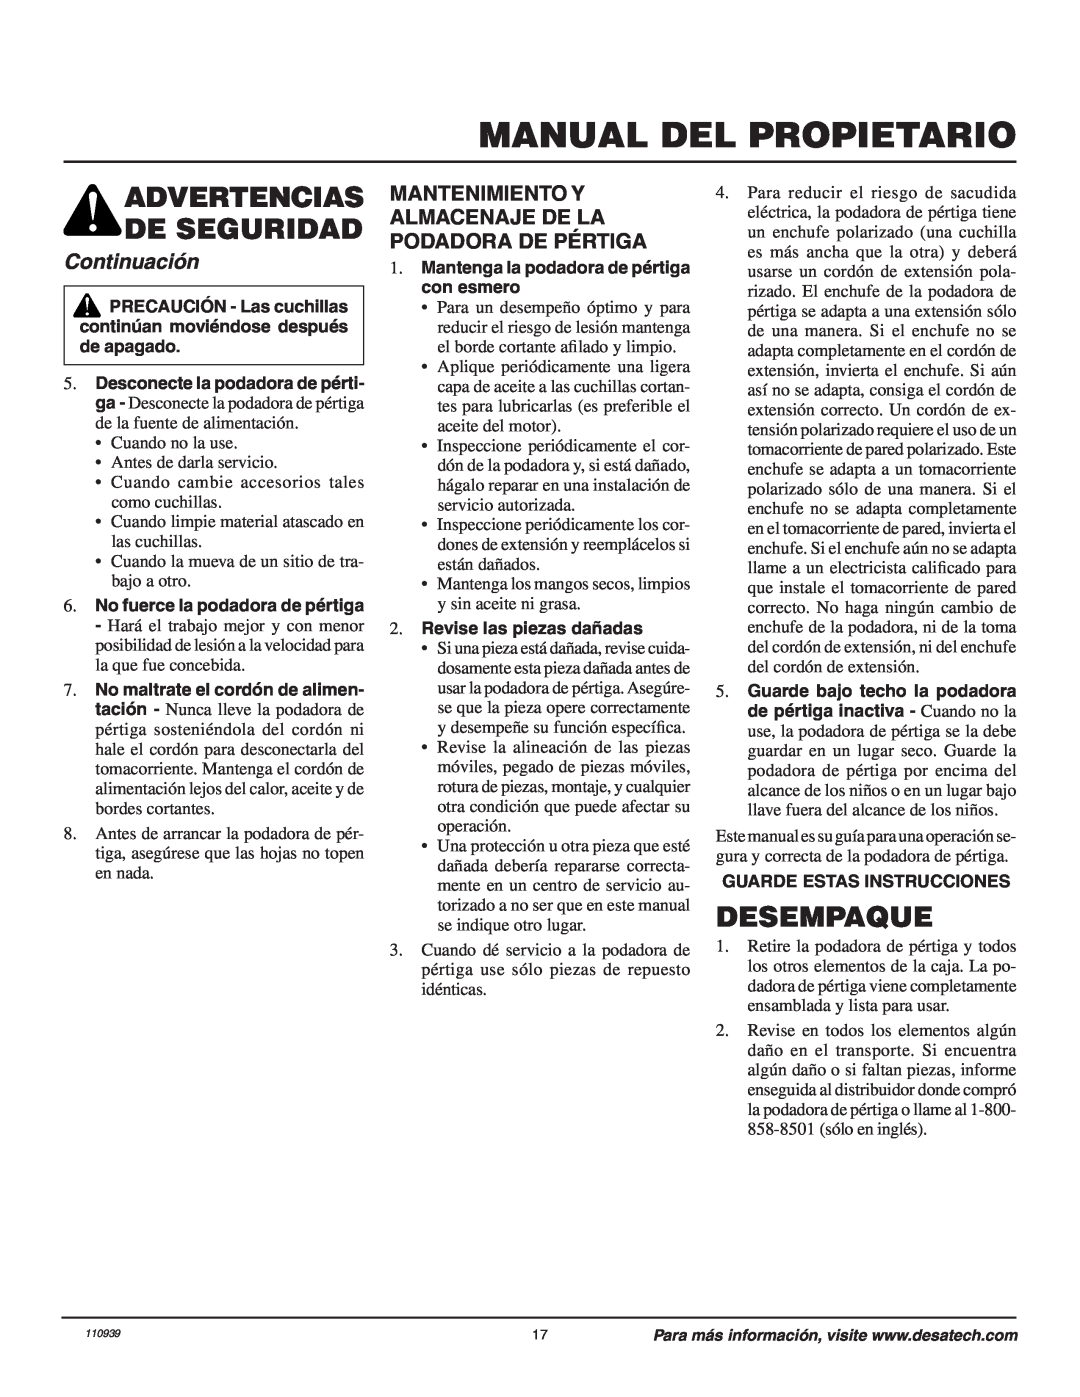 Remington 110946-01A owner manual Manual Del Propietario, Desempaque, Continuación, Advertencias De Seguridad 